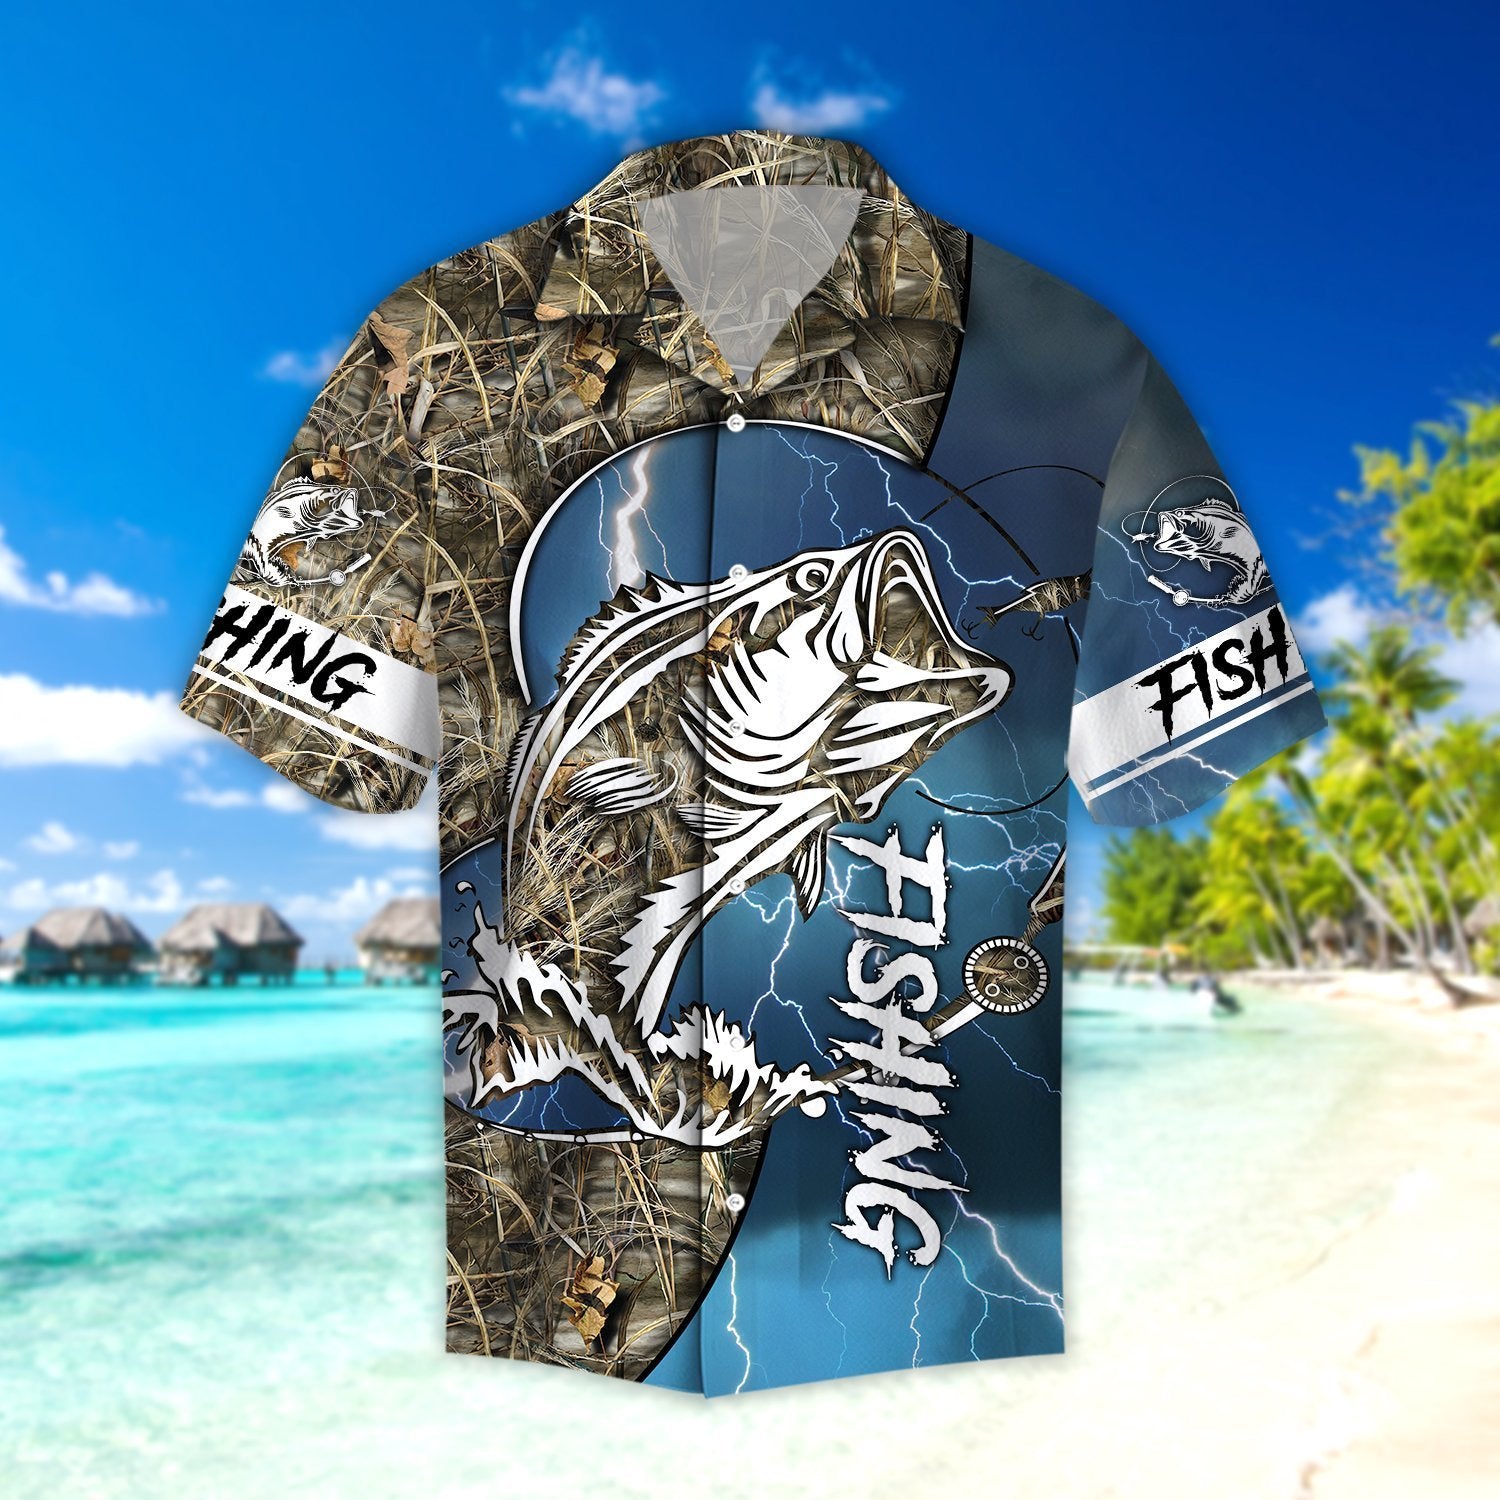 Life Tuna Fishing Catch And Release Hawaiian Shirt Pre12665, Hawaiian  shirt, beach shorts, One-Piece Swimsuit, Polo shirt, funny shirts, gift  shirts » Cool Gifts for You - Mfamilygift